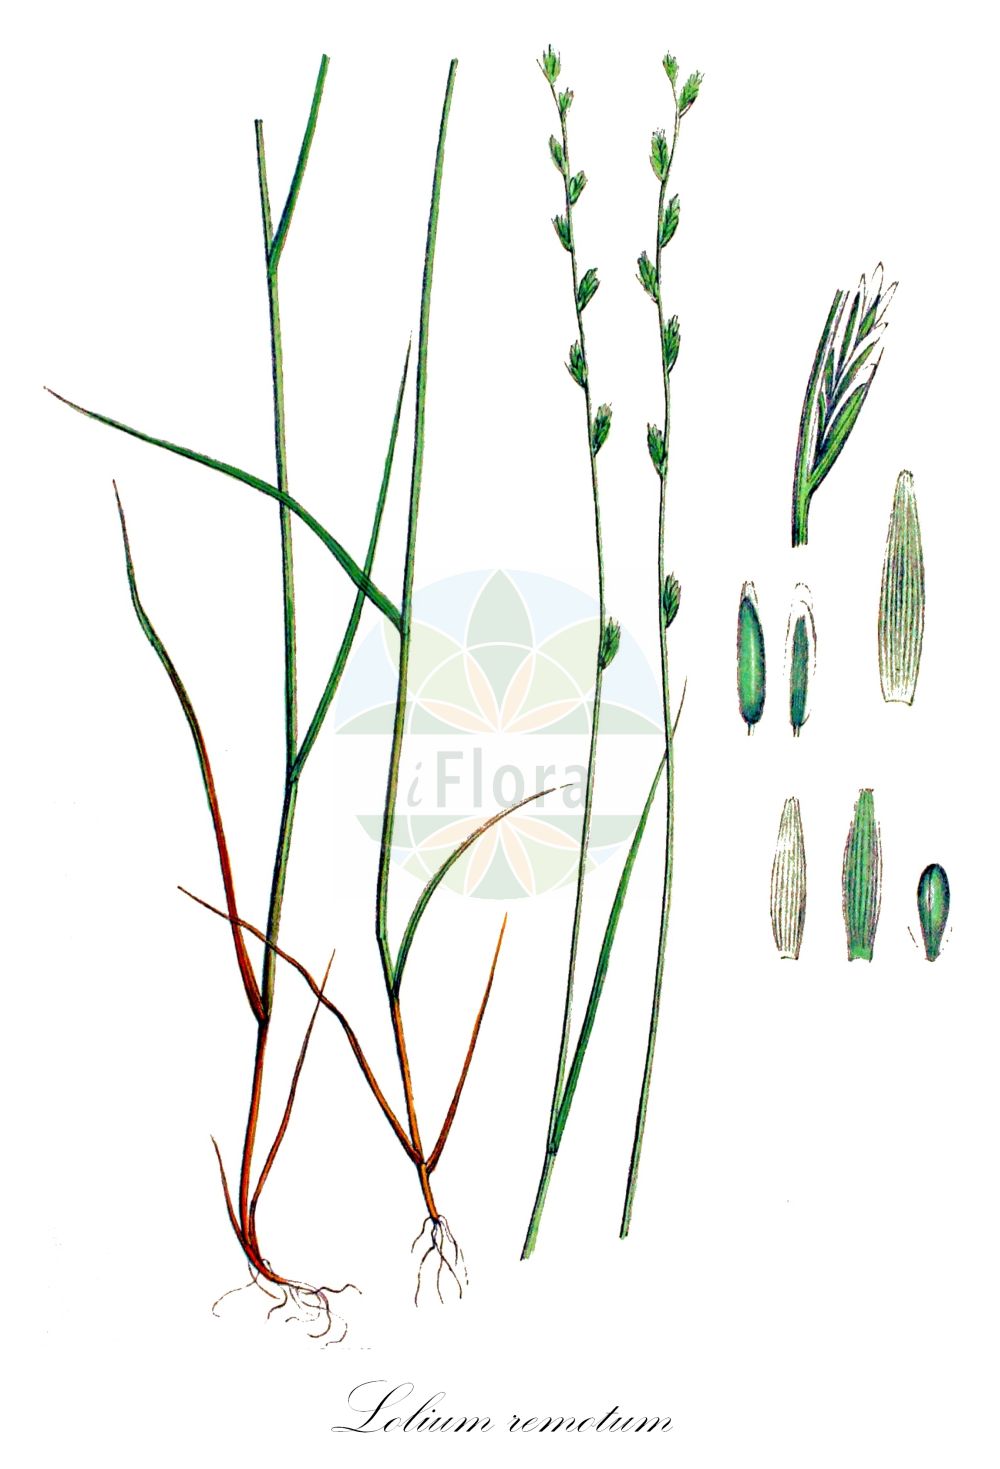 Historische Abbildung von Lolium remotum (Lein-Lolch - Flaxfield Rye-grass). Das Bild zeigt Blatt, Bluete, Frucht und Same. ---- Historical Drawing of Lolium remotum (Lein-Lolch - Flaxfield Rye-grass). The image is showing leaf, flower, fruit and seed.(Lolium remotum,Lein-Lolch,Flaxfield Rye-grass,Lolium linicola,Lolium remotum,Lein-Lolch,Flachs-Lolch,Flaxfield Rye-grass,Flax Darnel,Hardy Ryegrass,Lolium,Weidelgras,Ryegrass,Poaceae,Süßgräser,Grass family,Blatt,Bluete,Frucht,Same,leaf,flower,fruit,seed,Kops (1800-1934))